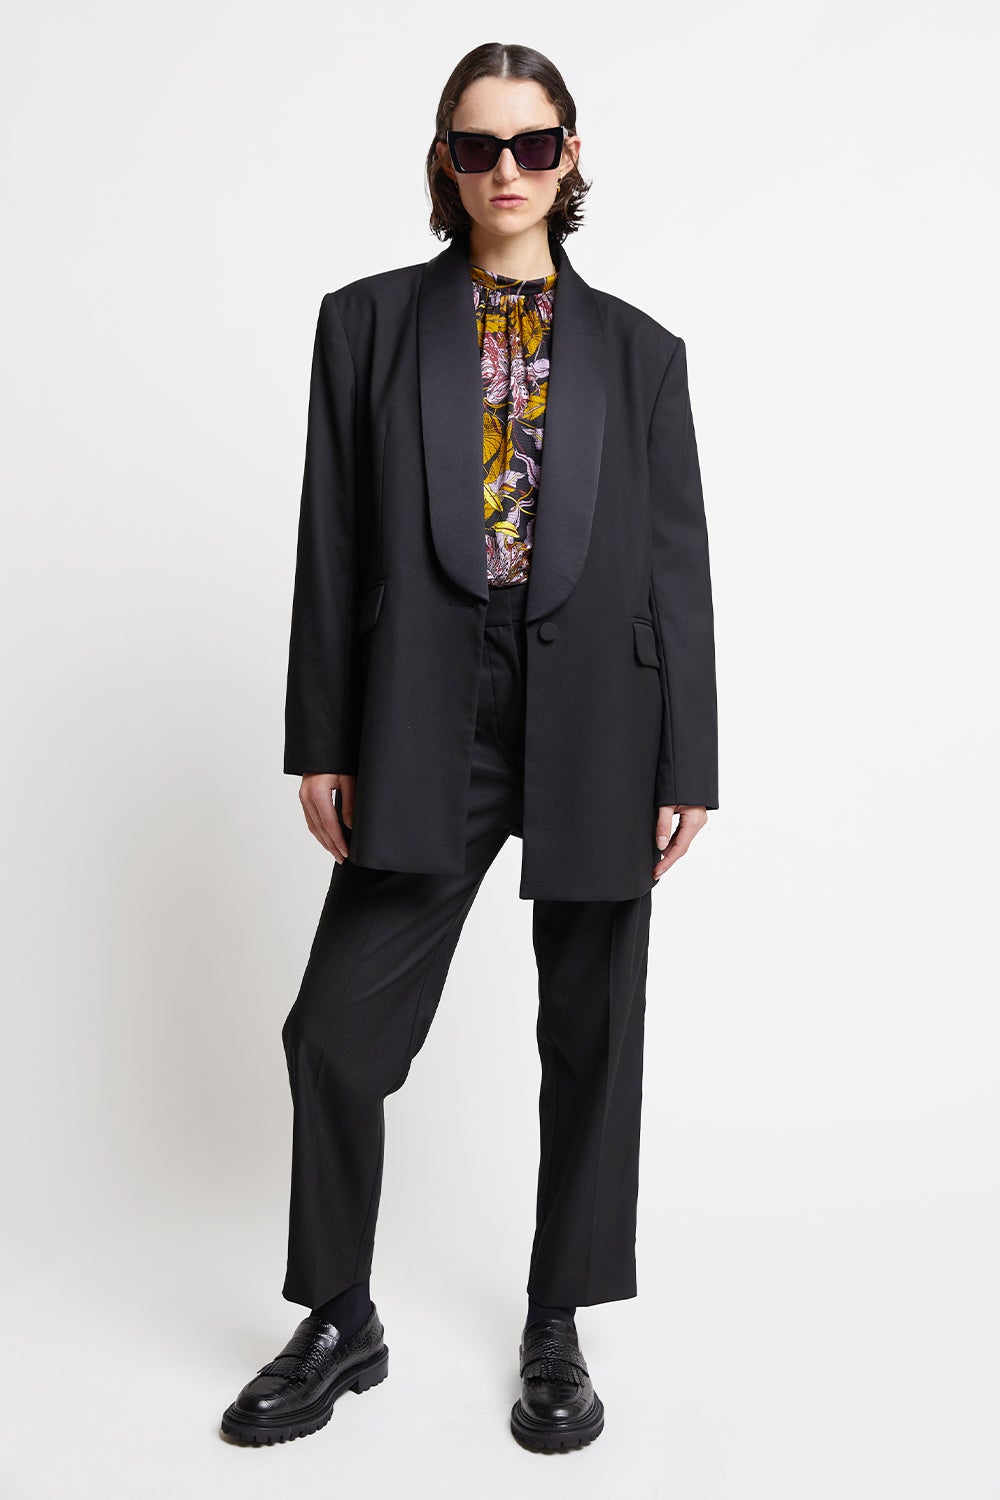 Michael Kors Collection Samantha HighWaist Tuxedo Trousers  Bergdorf  Goodman